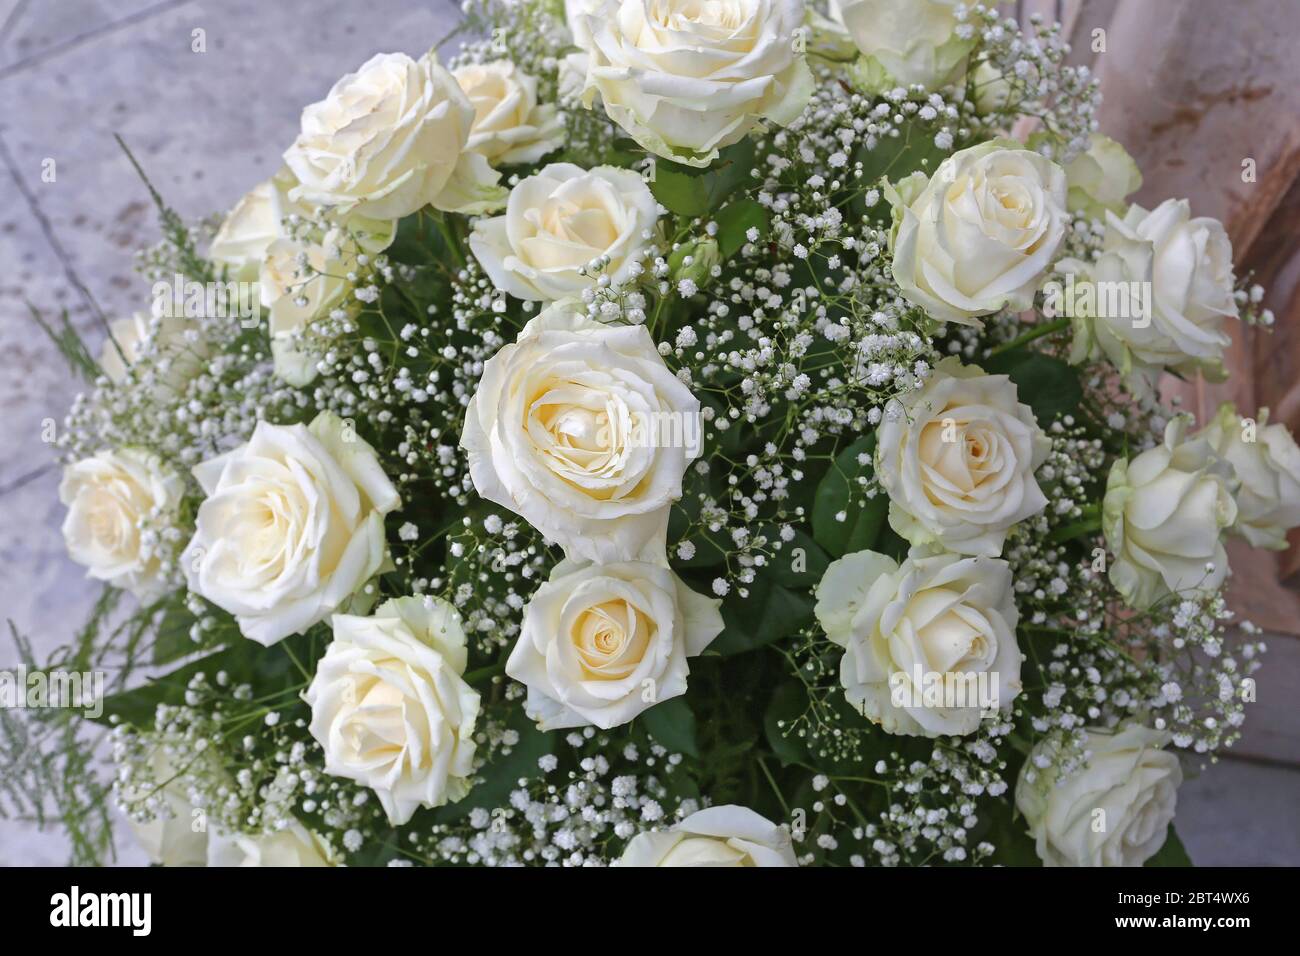 Weiße Rosen Hochzeit Strauß Blumen vor der Kirche Stockfotografie - Alamy